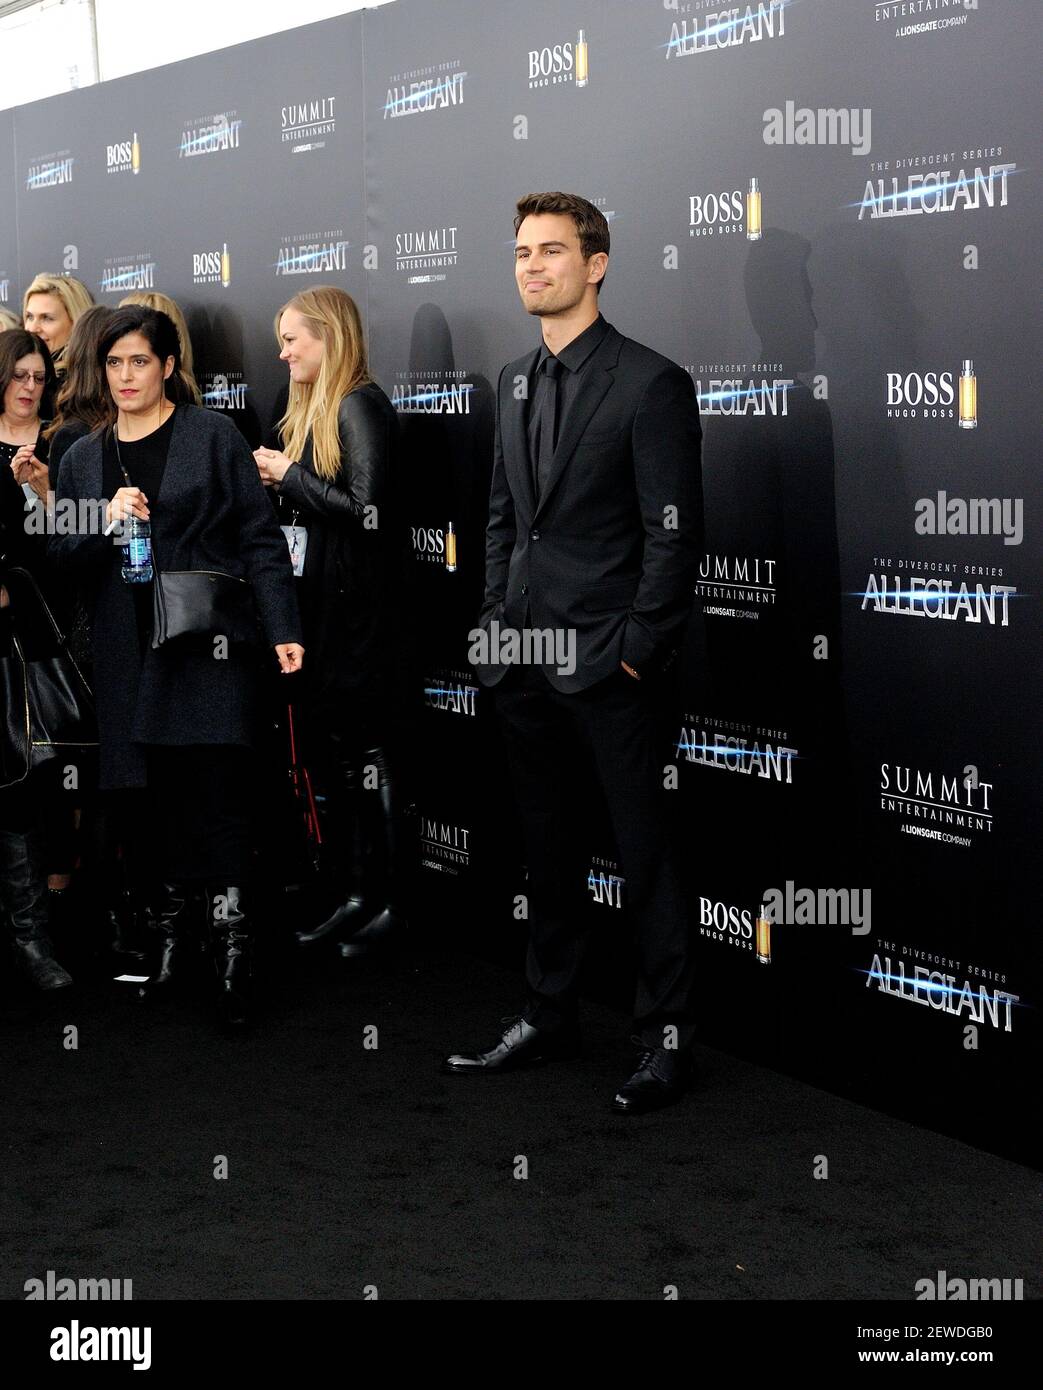 L'attore Theo James partecipa alla prima mondiale di "The Divergent Series:  Allegiant" presso l'AMC Loews Lincoln Square Cinemas a New York, NY, il 14  marzo 2016 Foto stock - Alamy